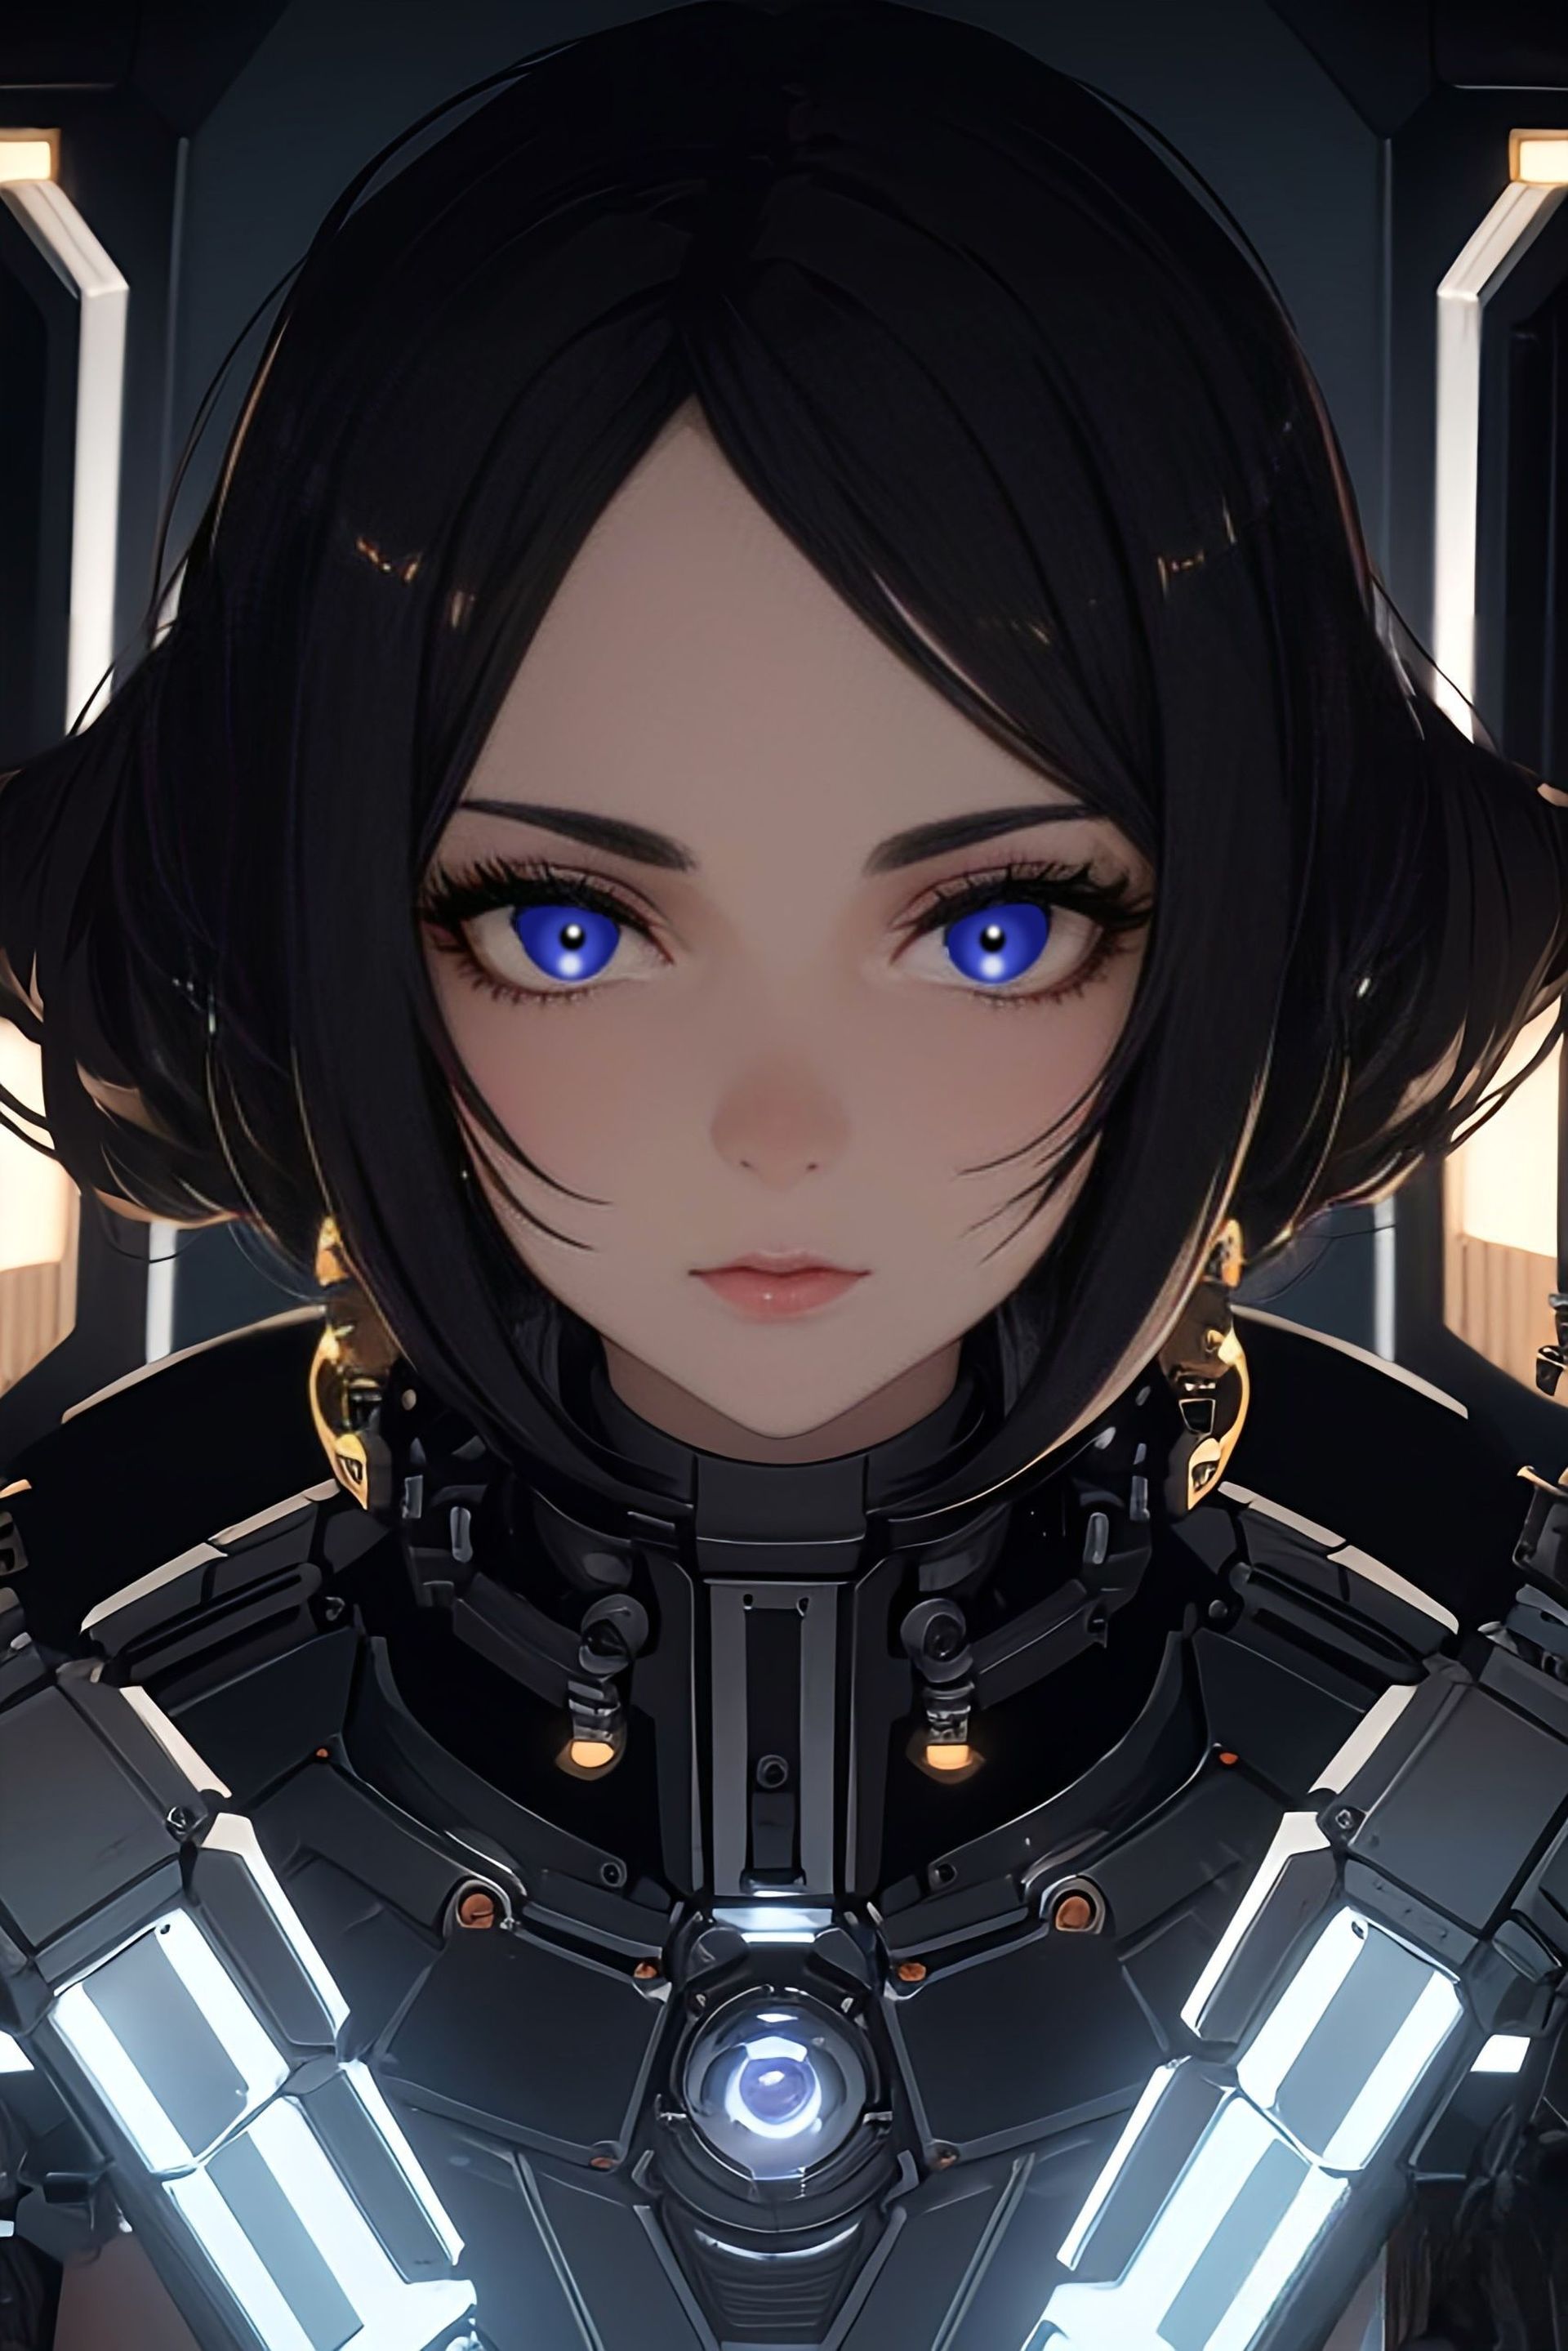 一个女孩，一个机器人，蓝眼睛，短头发。